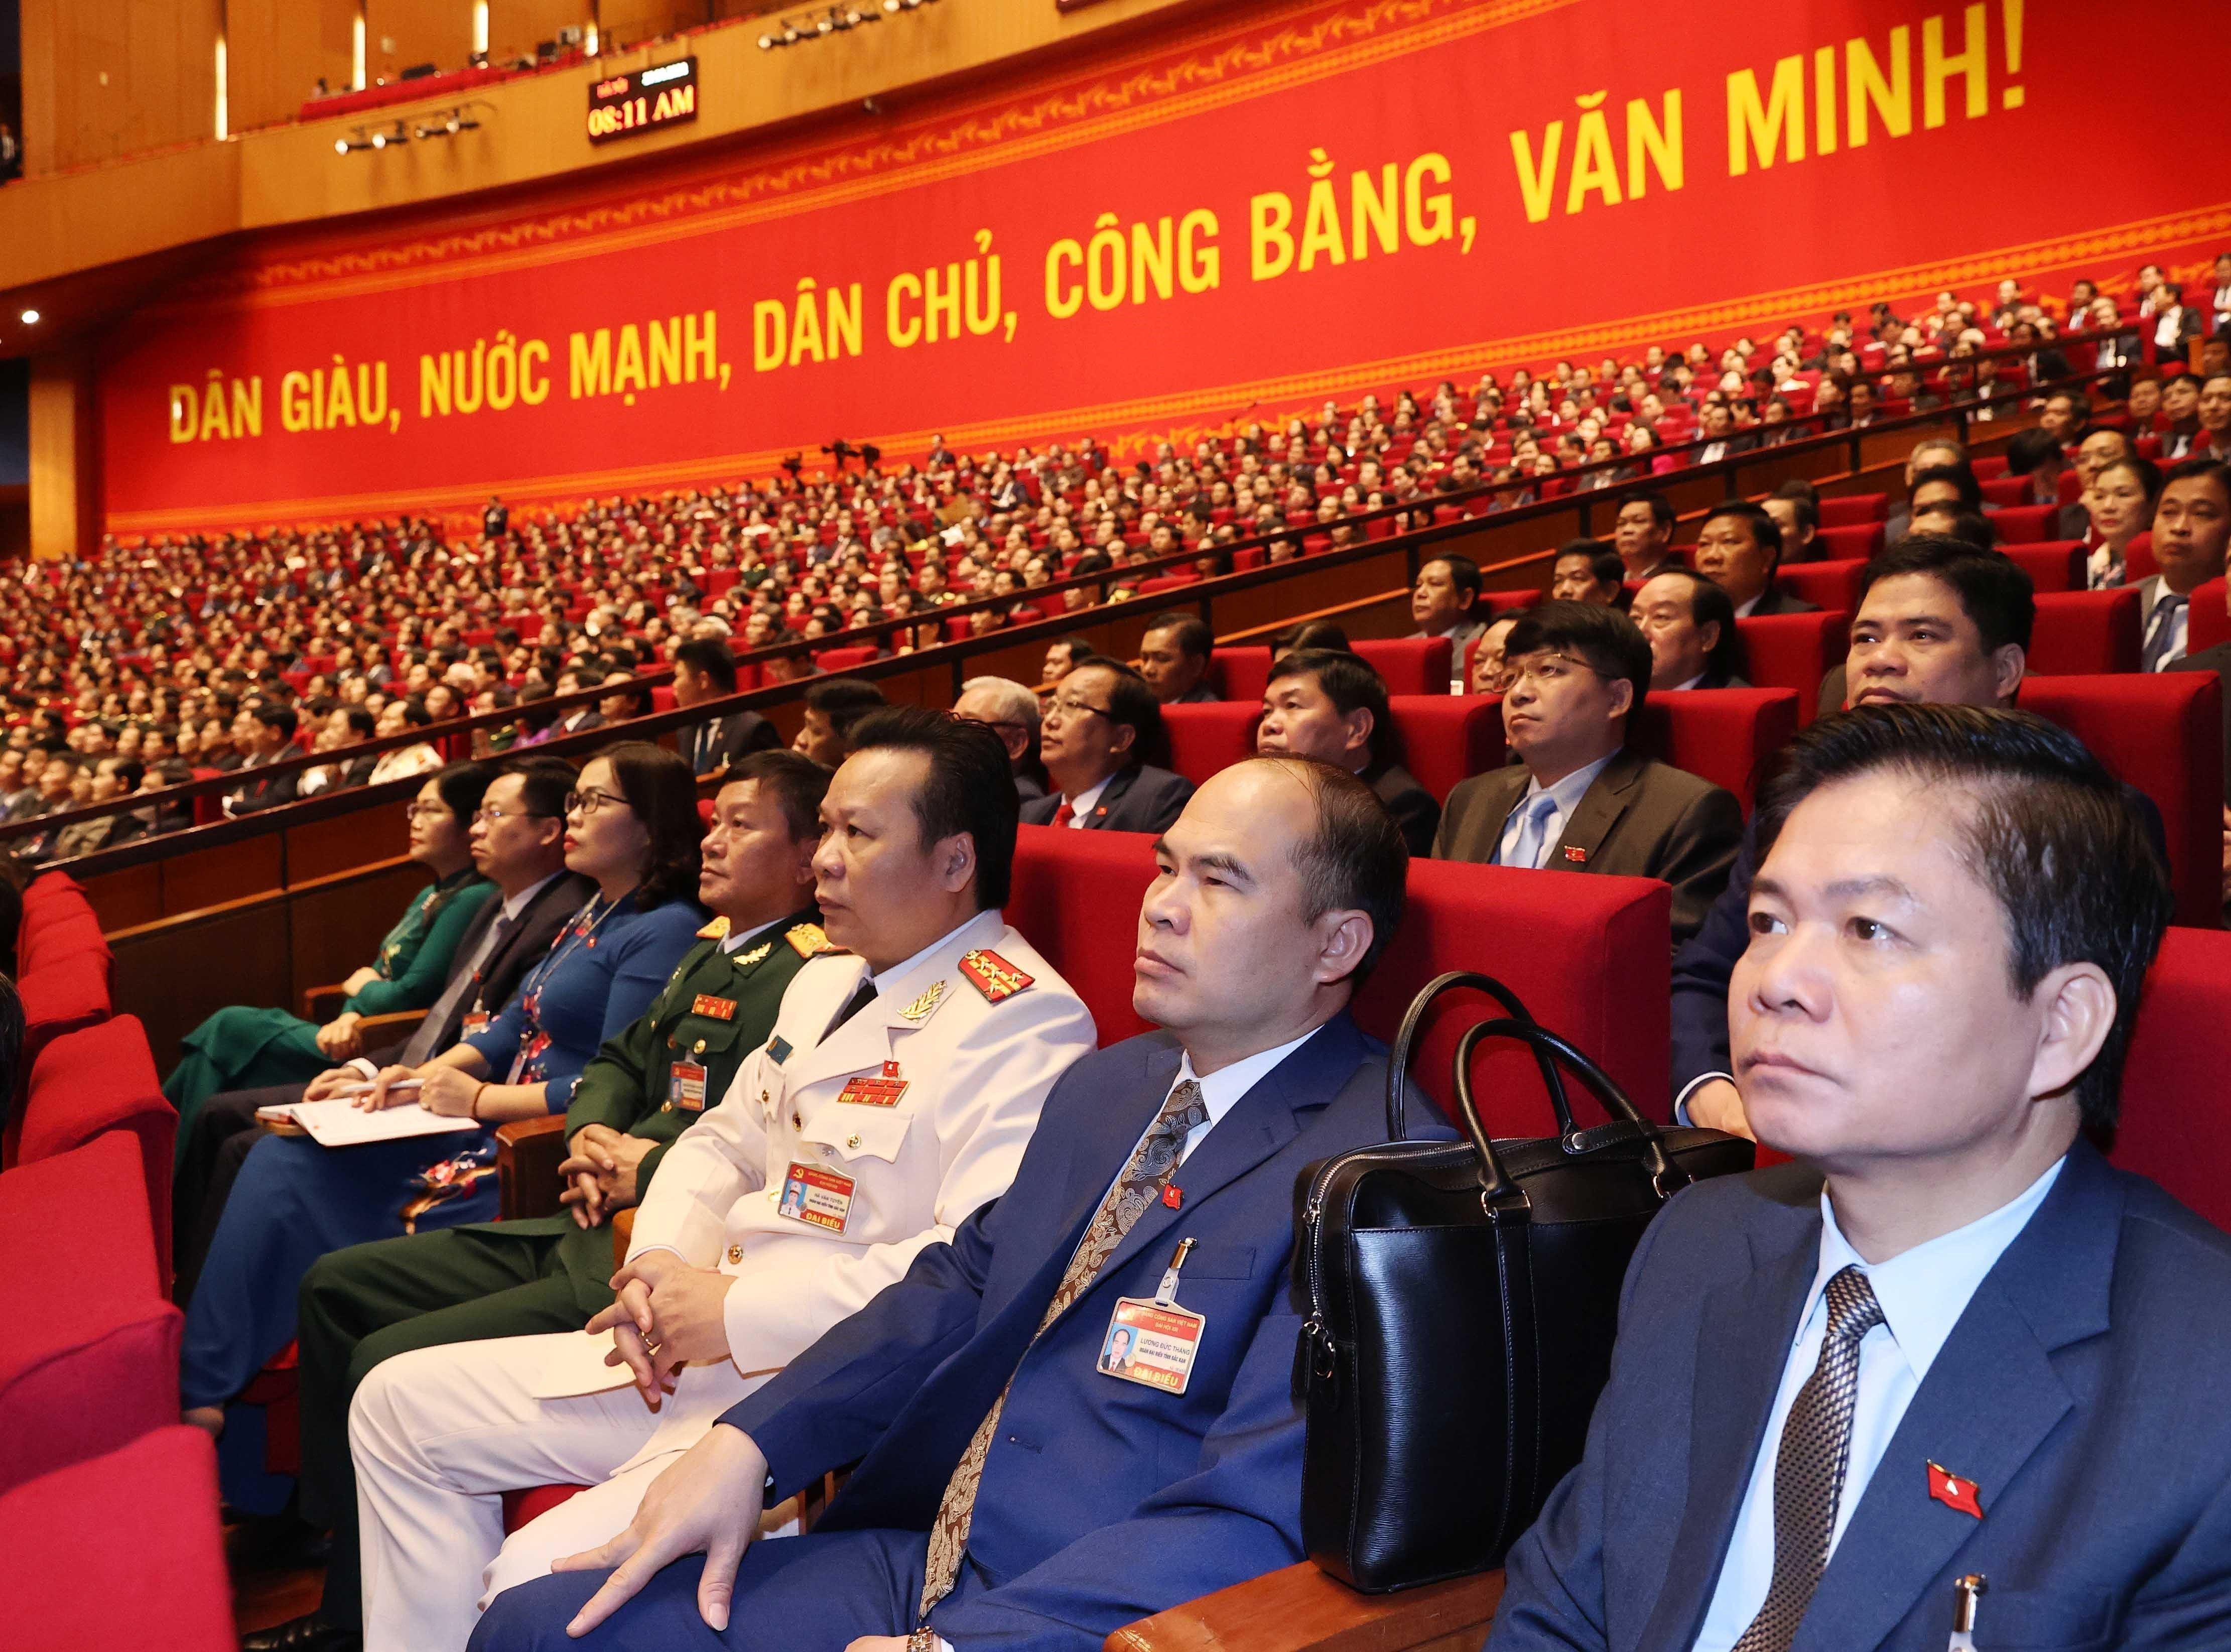 Các đại biểu dự phiên tham luận tại hội trường Trung tâm Hội nghị Quốc gia, sáng 27/1. Ảnh: TTXVN